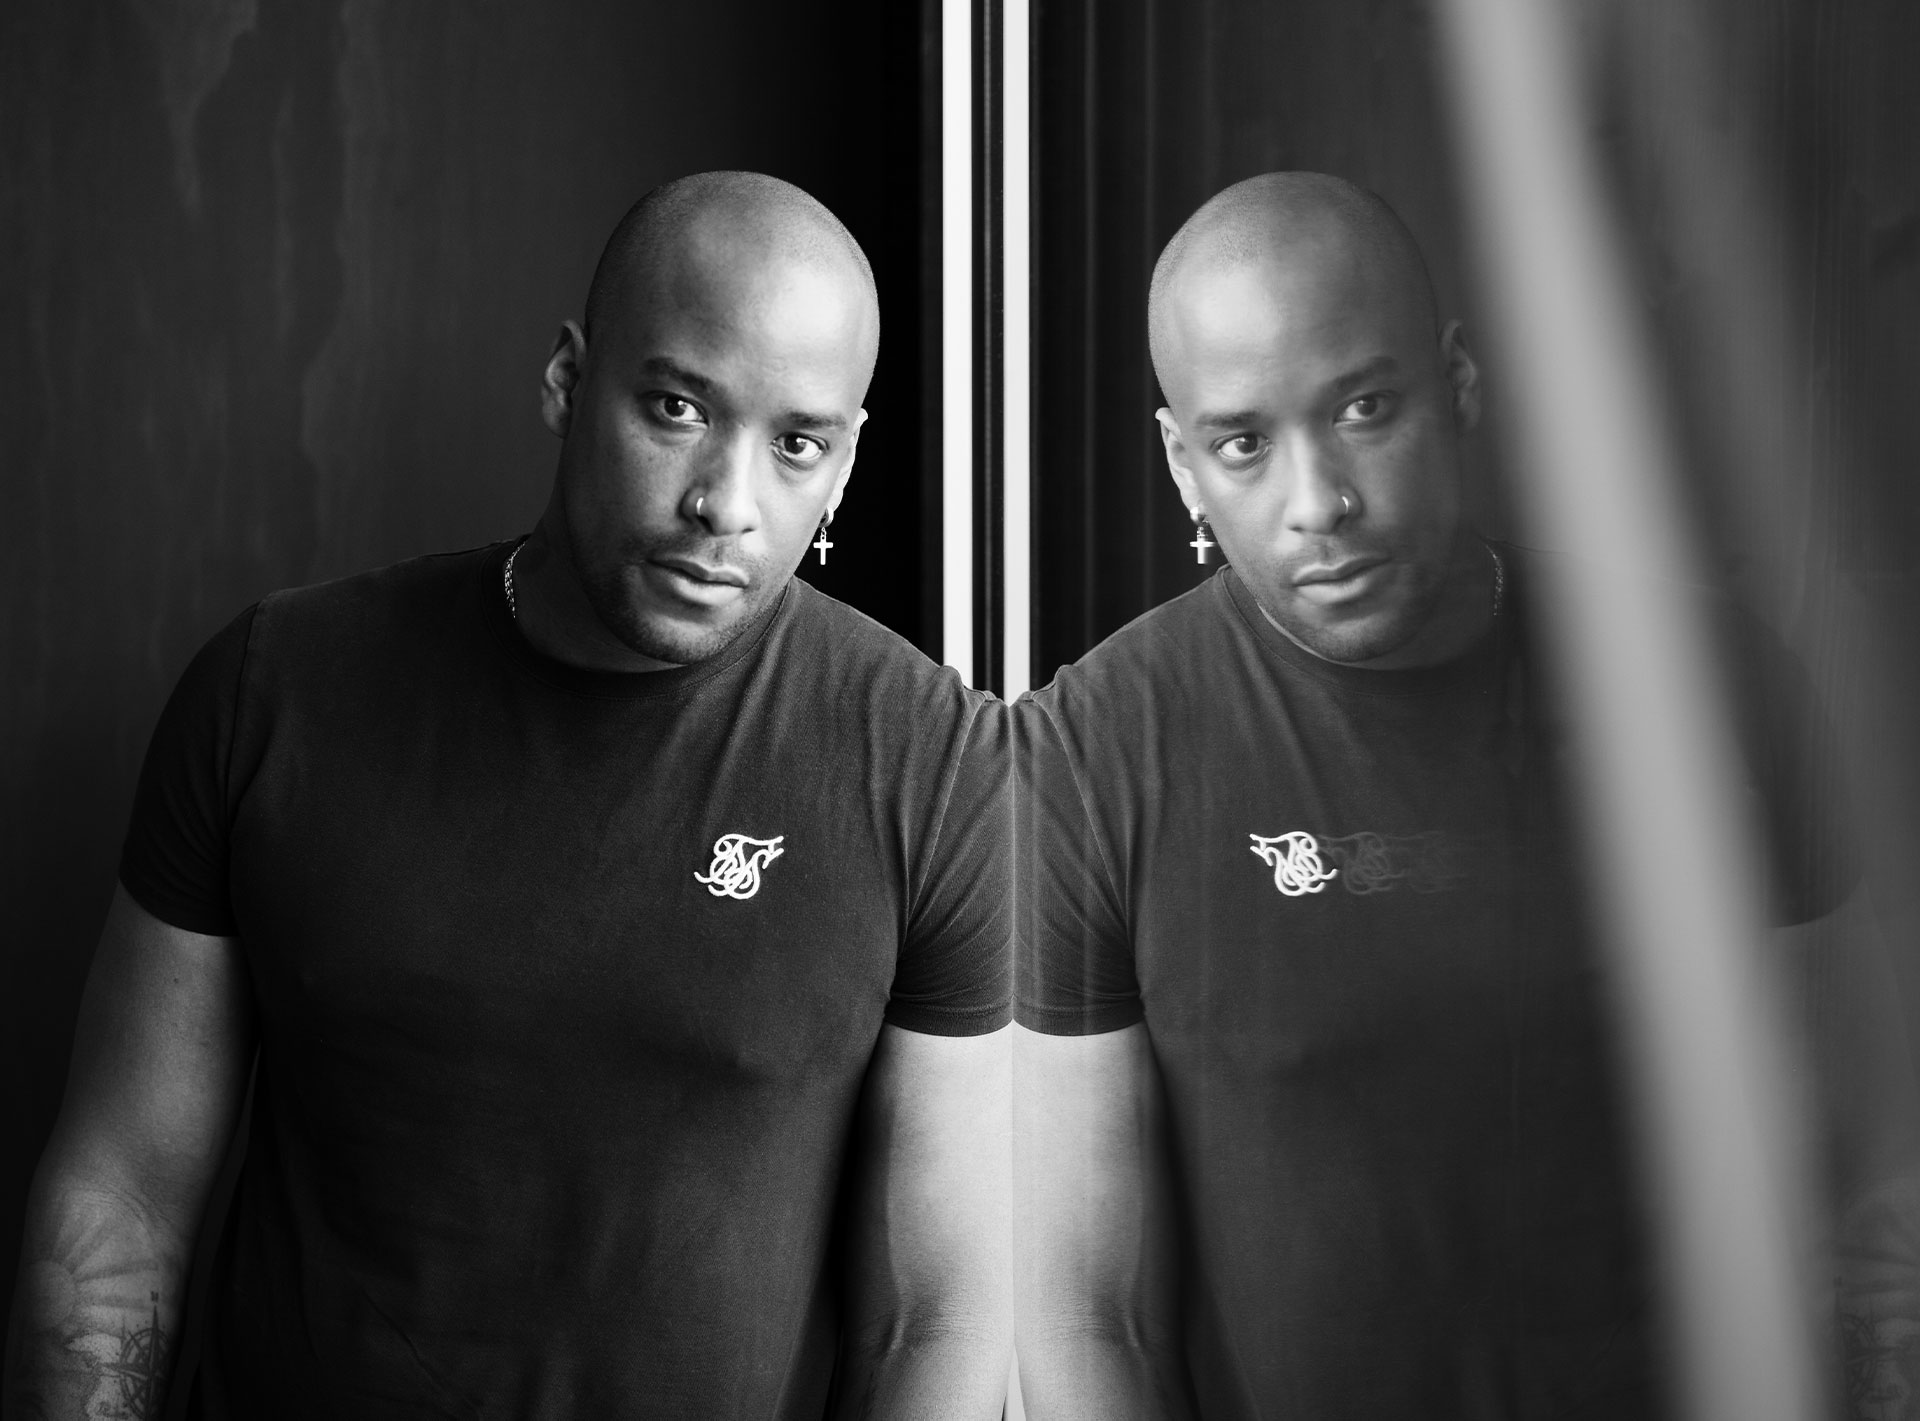 Schwarz-weiß Porträt eines Mannes mit Glatze, der sich an eine Fensterscheibe lehnt und sein Spiegelbild betrachtet.